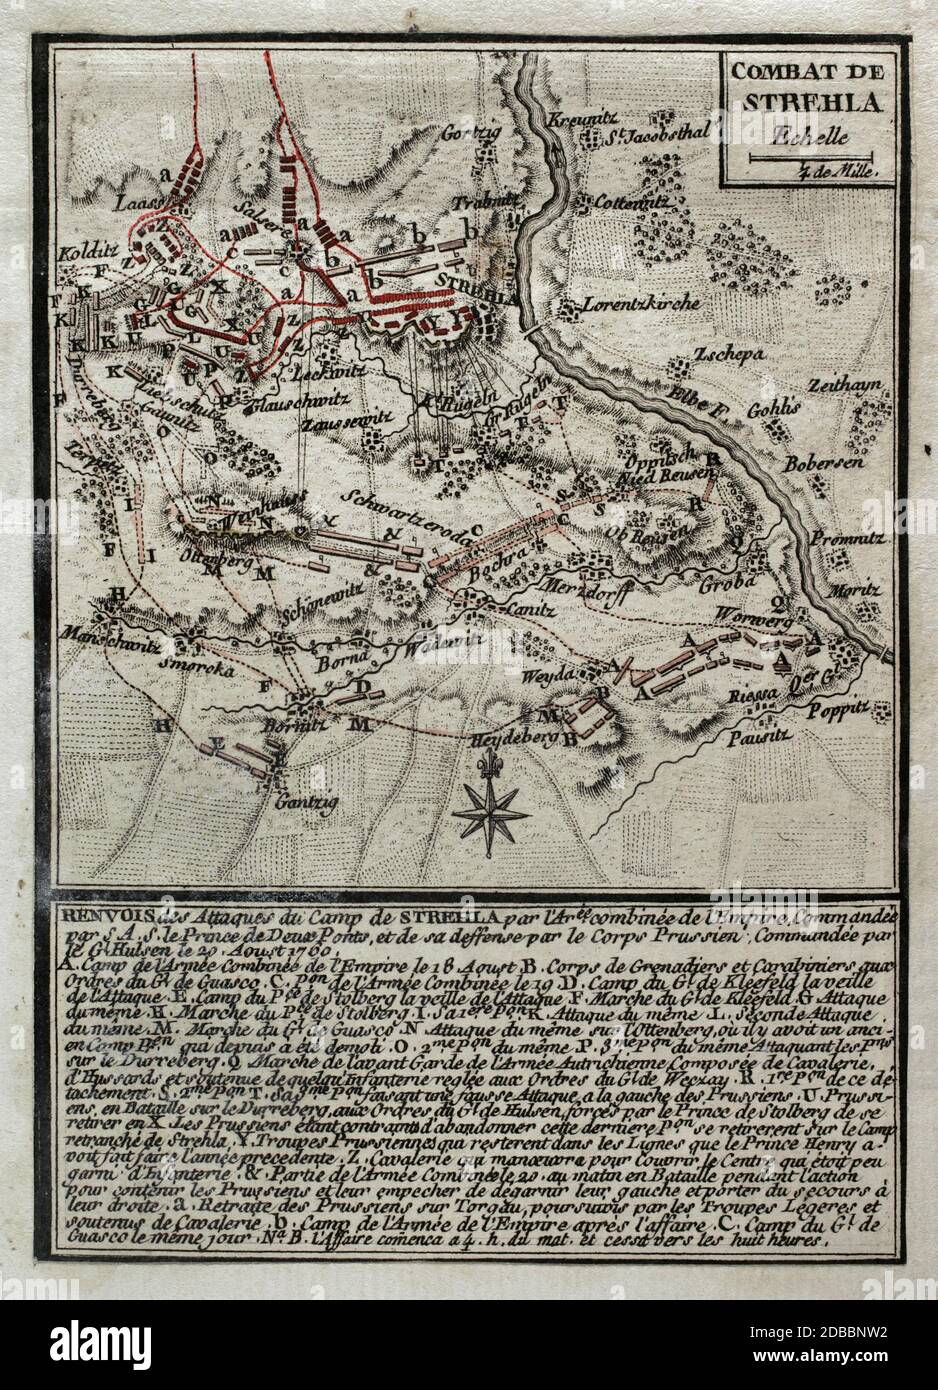 Batalla de Strehla. Episodio bélico que tuvo lugar el 20 de agosto de 1760 cerca de la ciudad de Strehla en Sajonia, durante la Tercera Guerra de Silesia, en el marco de la Guerra de los Siete Años. El ejército prusiano, comandado por Johann Dietrich von Hulsen, atacó las lineas prusianas defendidas por tropas lideradas por Frederick Michael (Conde Palatino de Zweibrucken). Los prusianos lograron imponerse a los austríacos. Grabado publicado en 1765 por el cartógrafo Jean de Beaurain (1696-1771) como ilustración de su Gran mapa de Alemania, con los eventos que tuvieron lugar durante la Guerra Stock Photo